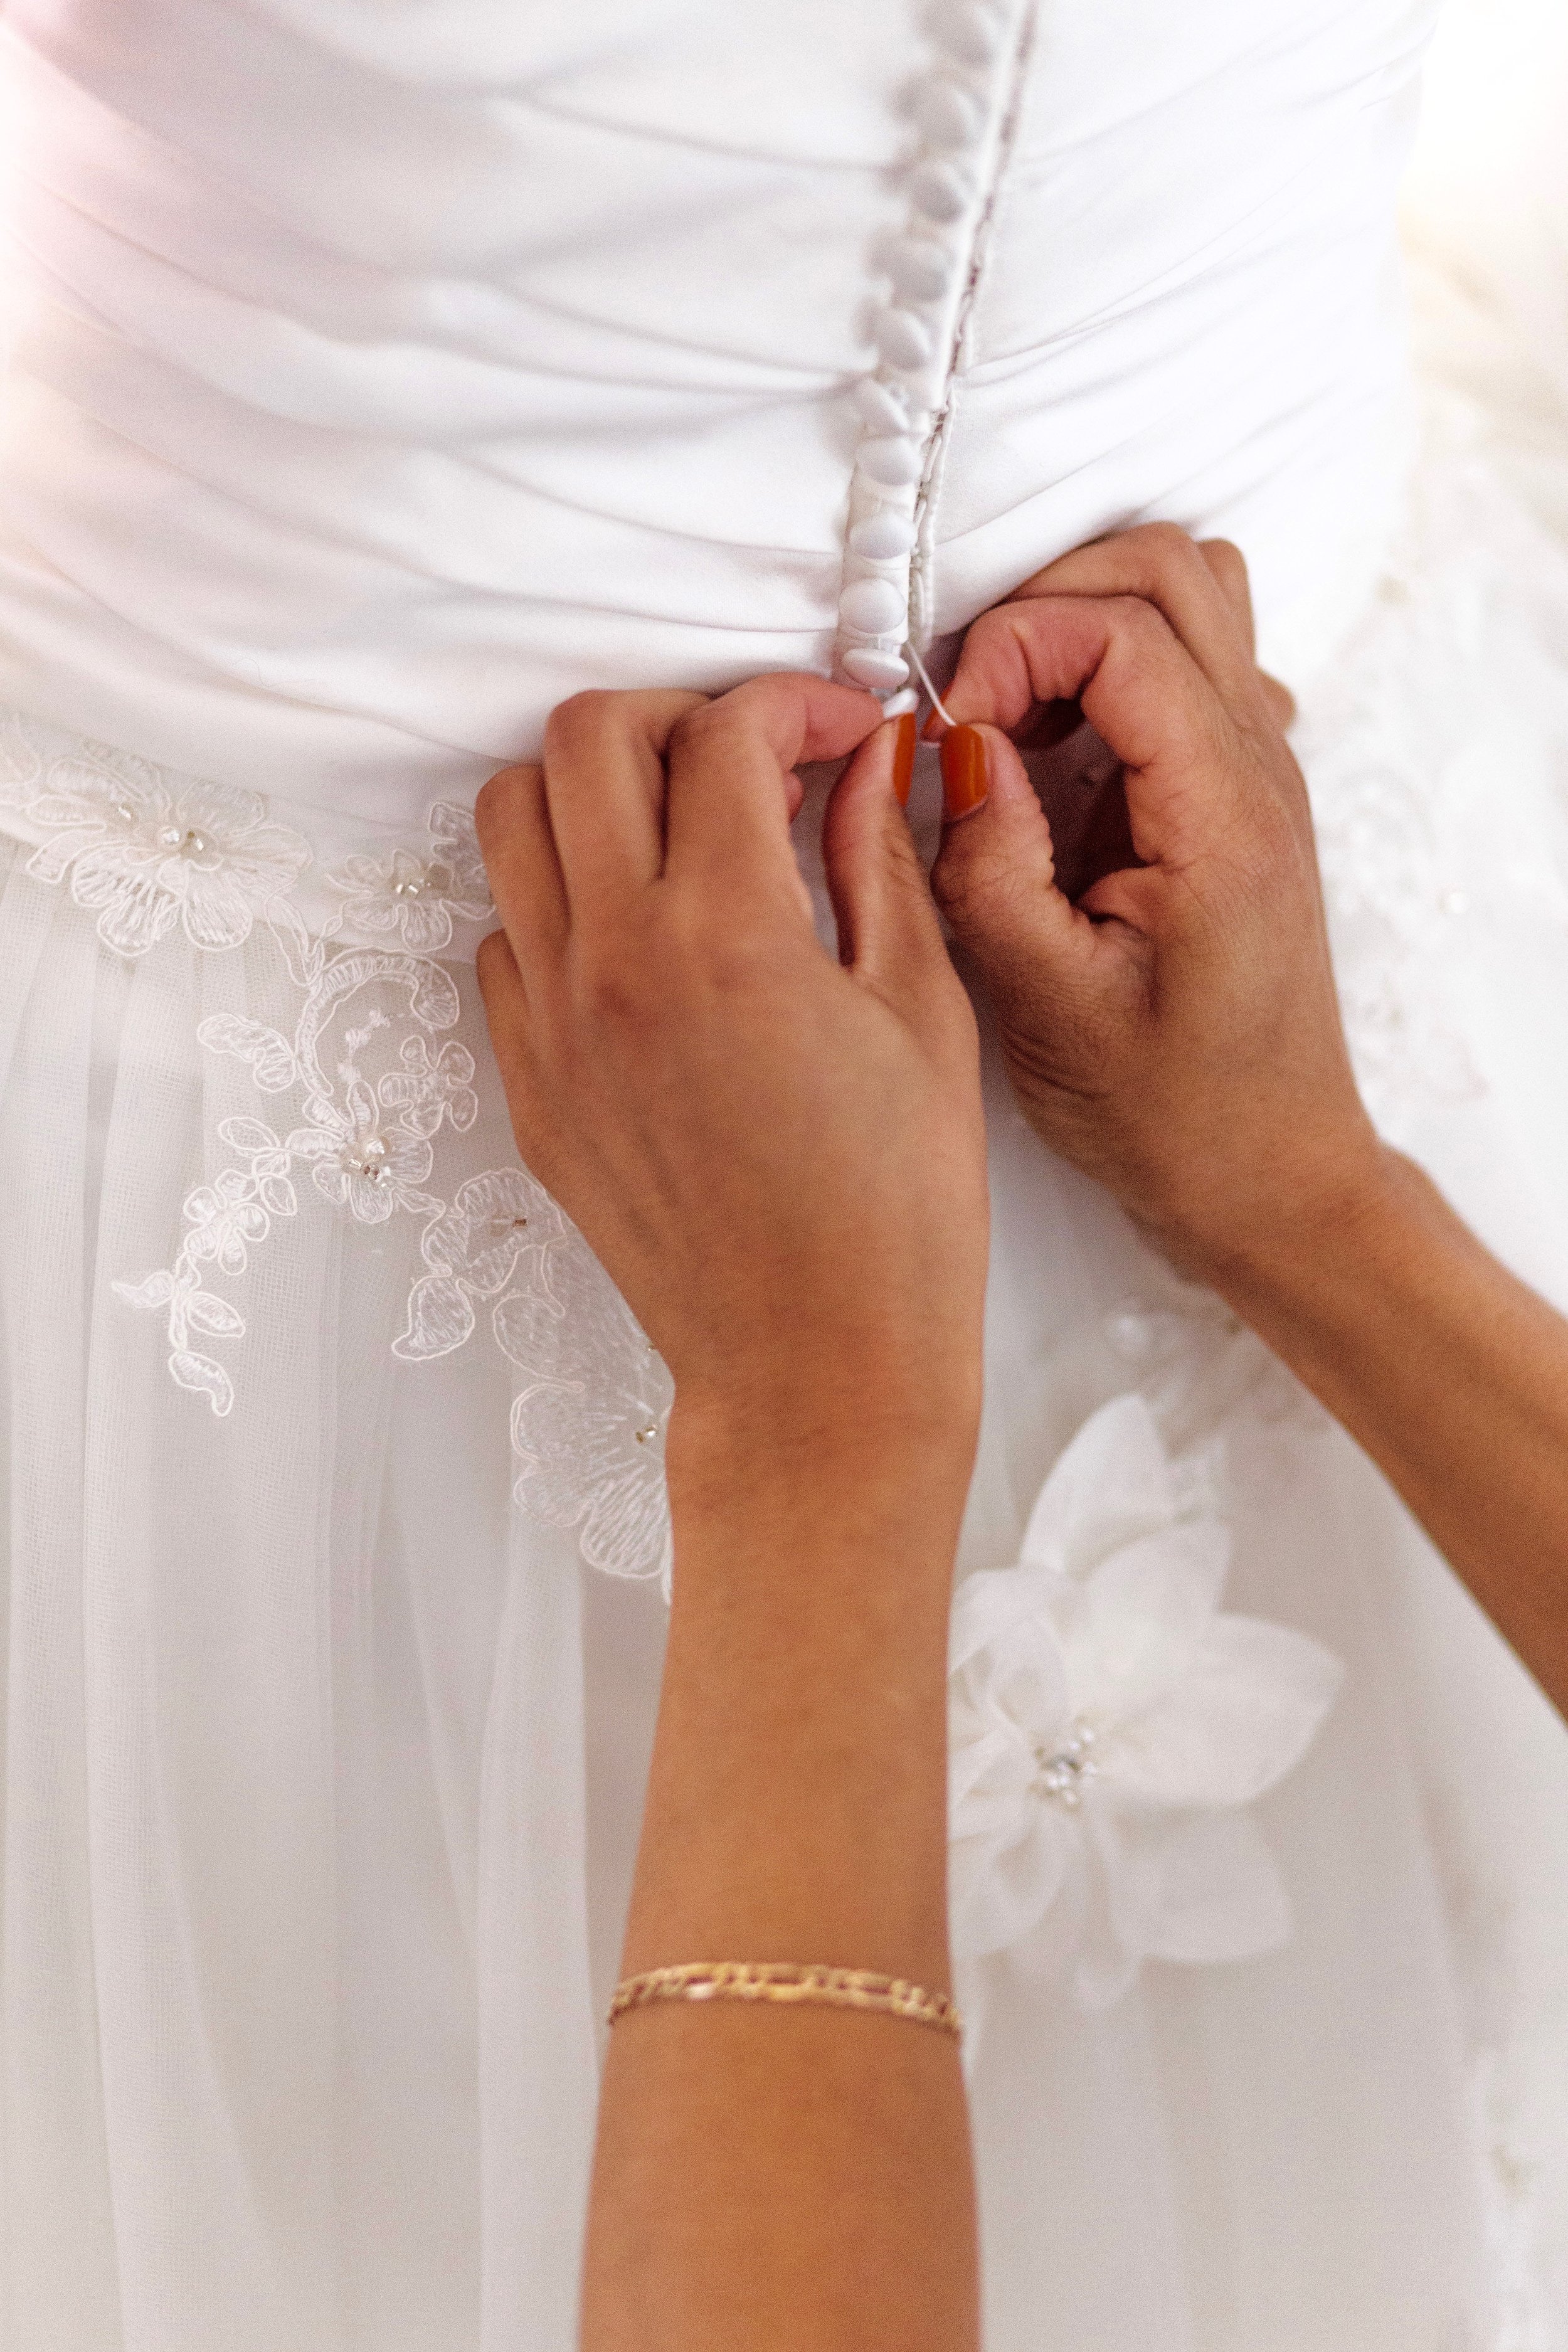 Nuestros Servicios — La Sposa Bridal Salon